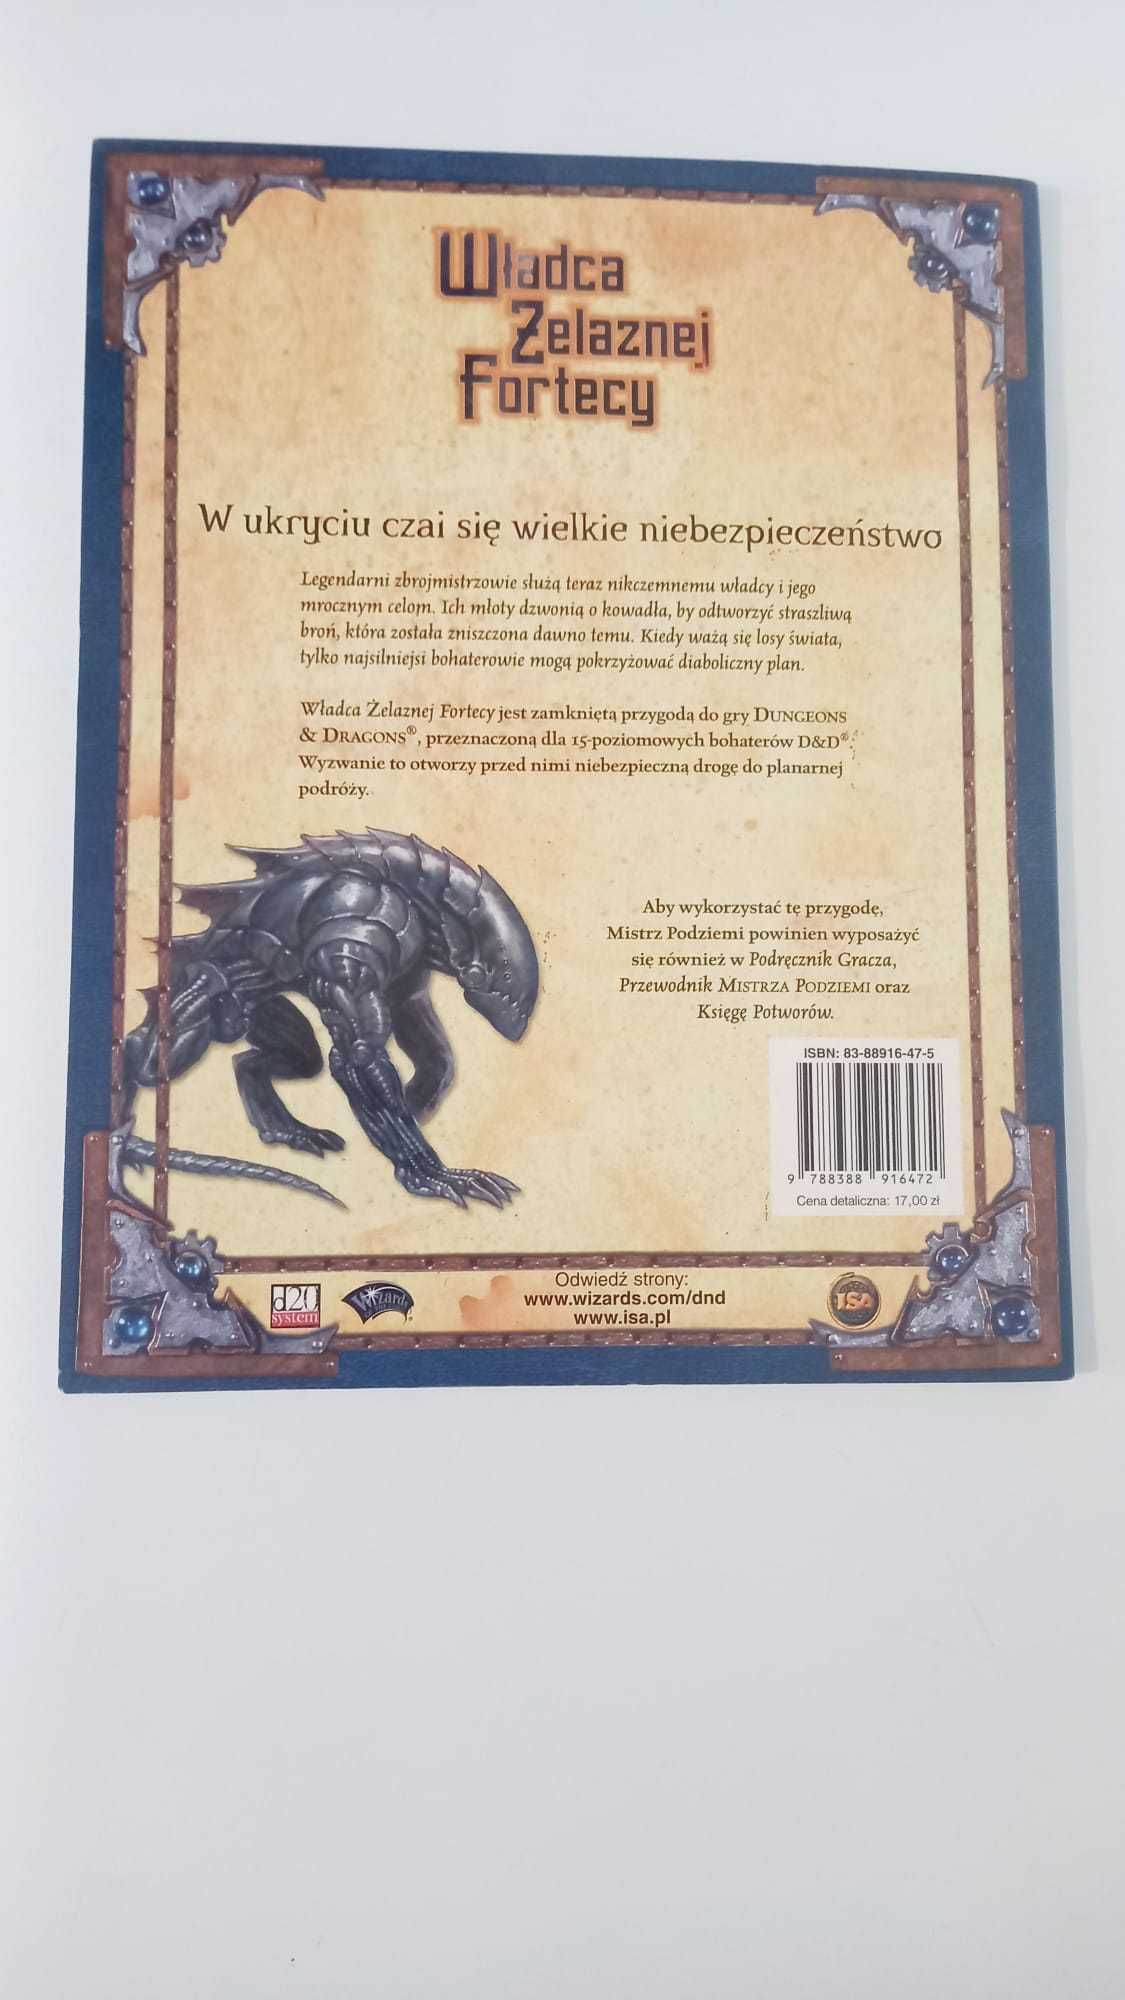 Podręcznik, scenariusz Dungeons and Dragons Władca Żelaznej Fortecy.